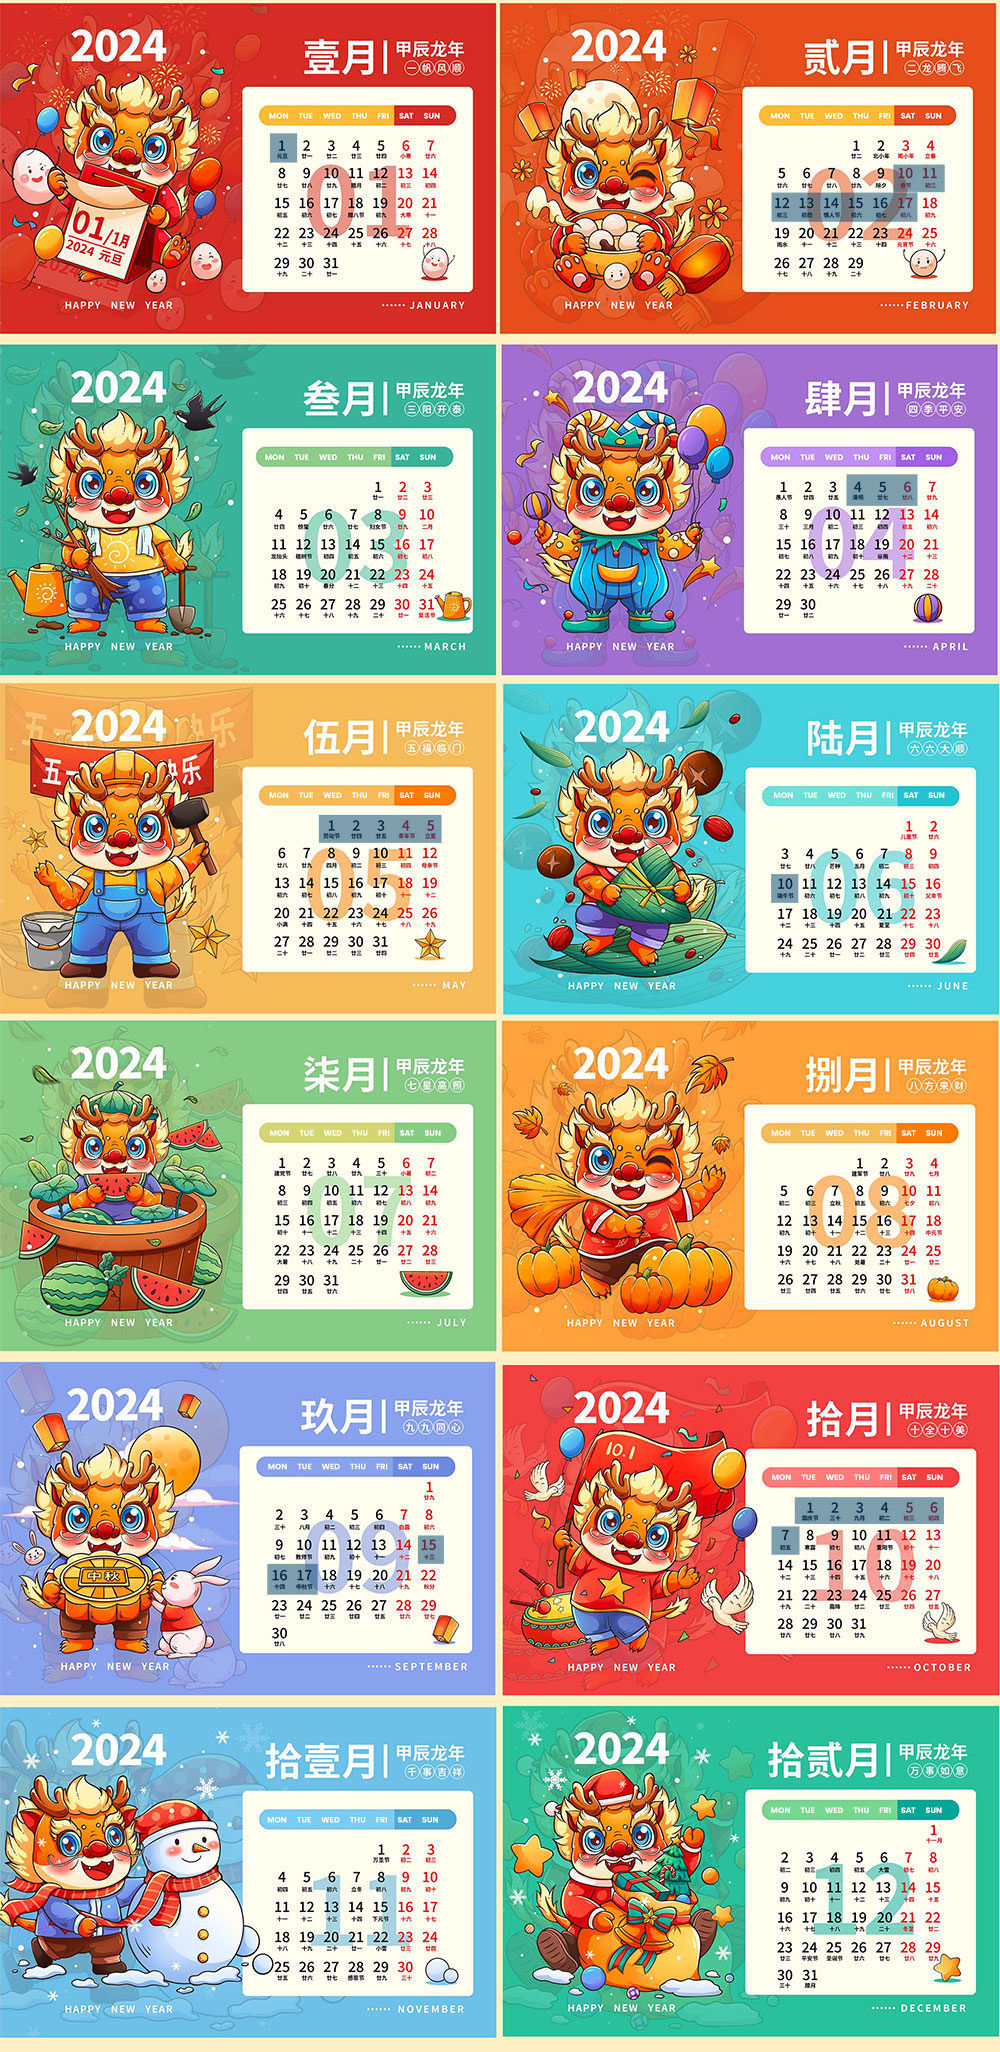 China Public Holiday Calendar In 2024 - Holidays In China | 2024 Chinese New Year Calendar Hong Kong